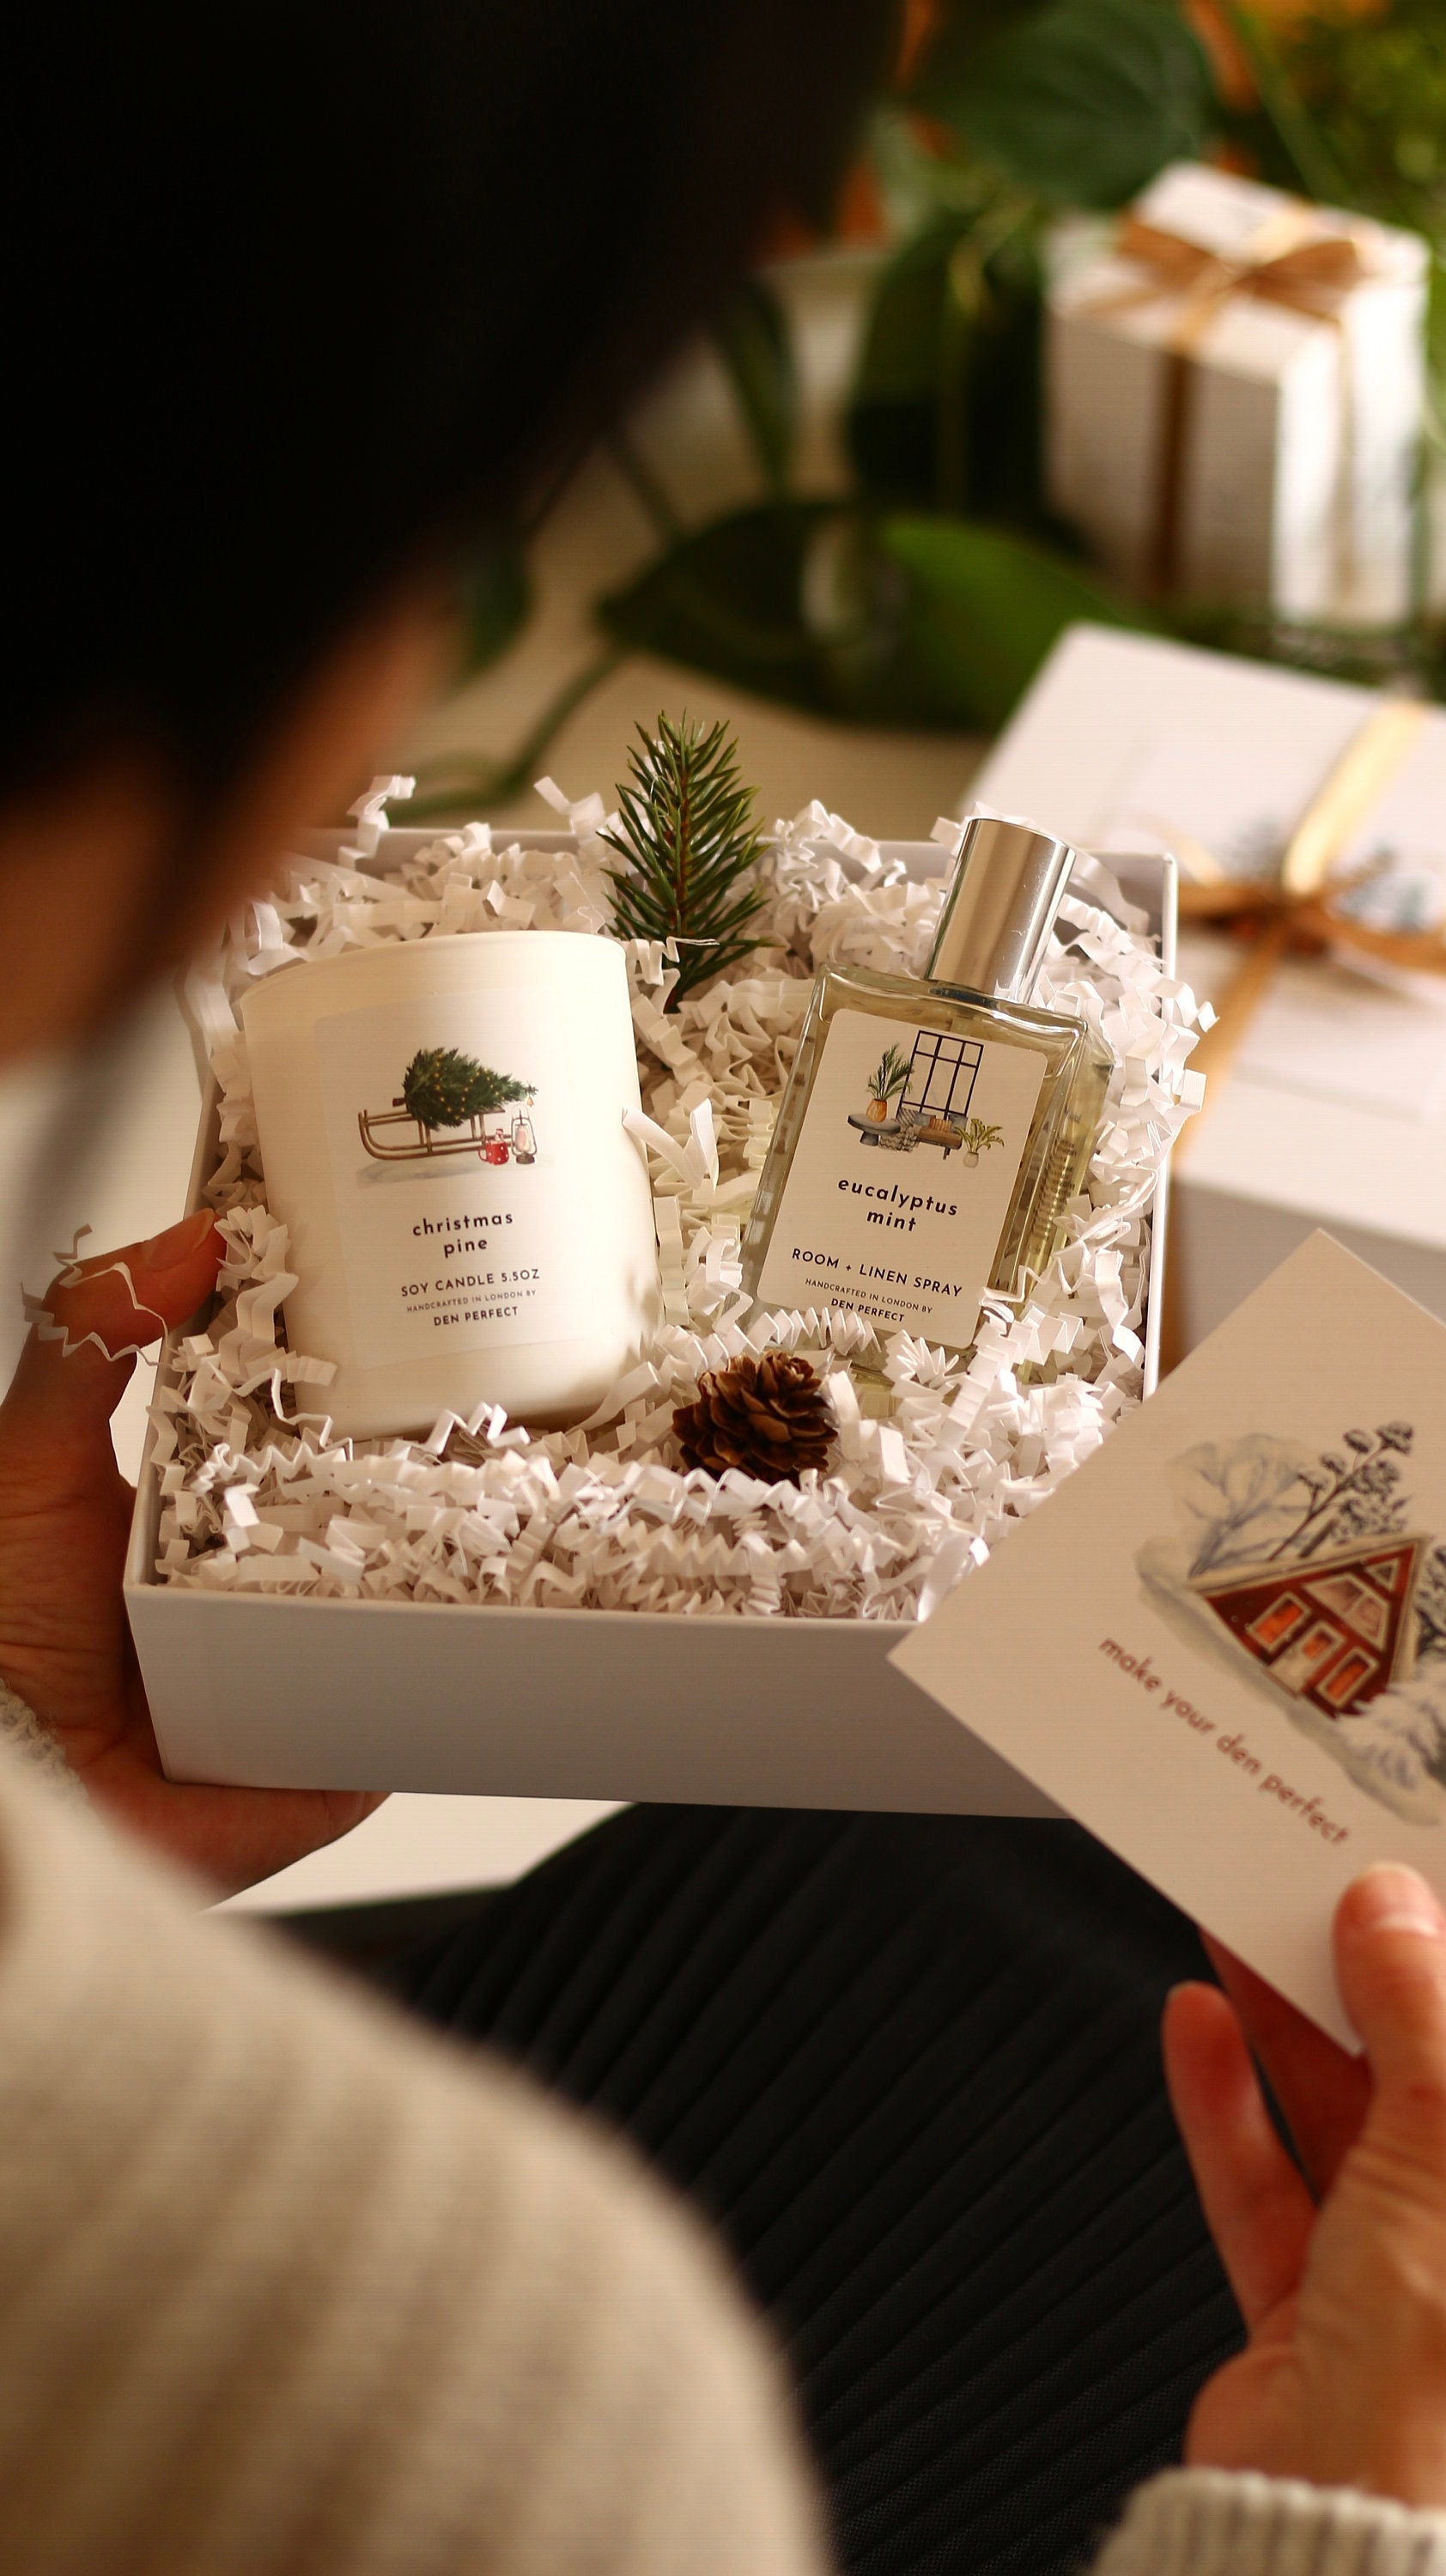 Christmas Pine Geschenkset, Sojakerze Und Zimmer + Leinenspray Geschenkbox von DenPerfectUK